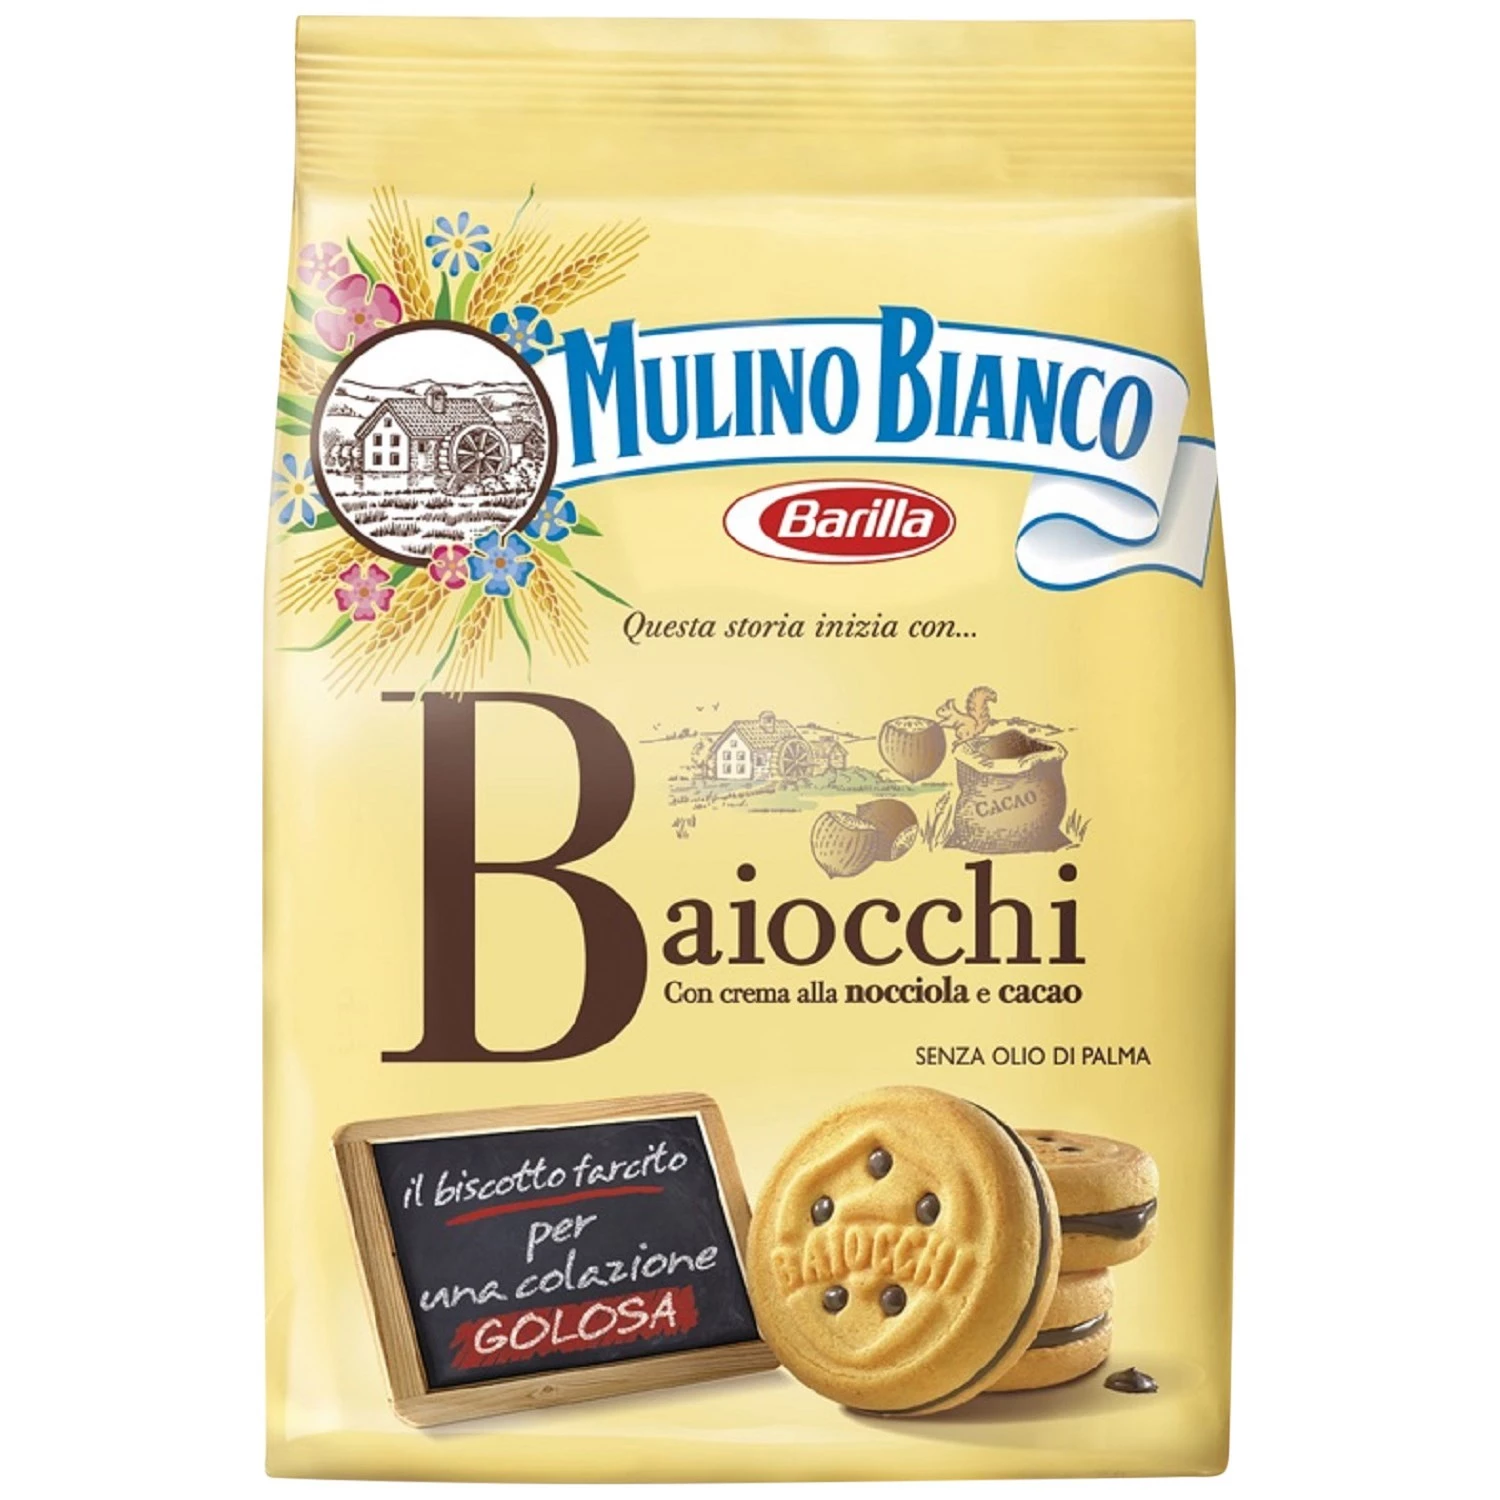 Mulino Bianco Baiocchi (260g) acheter à prix réduit